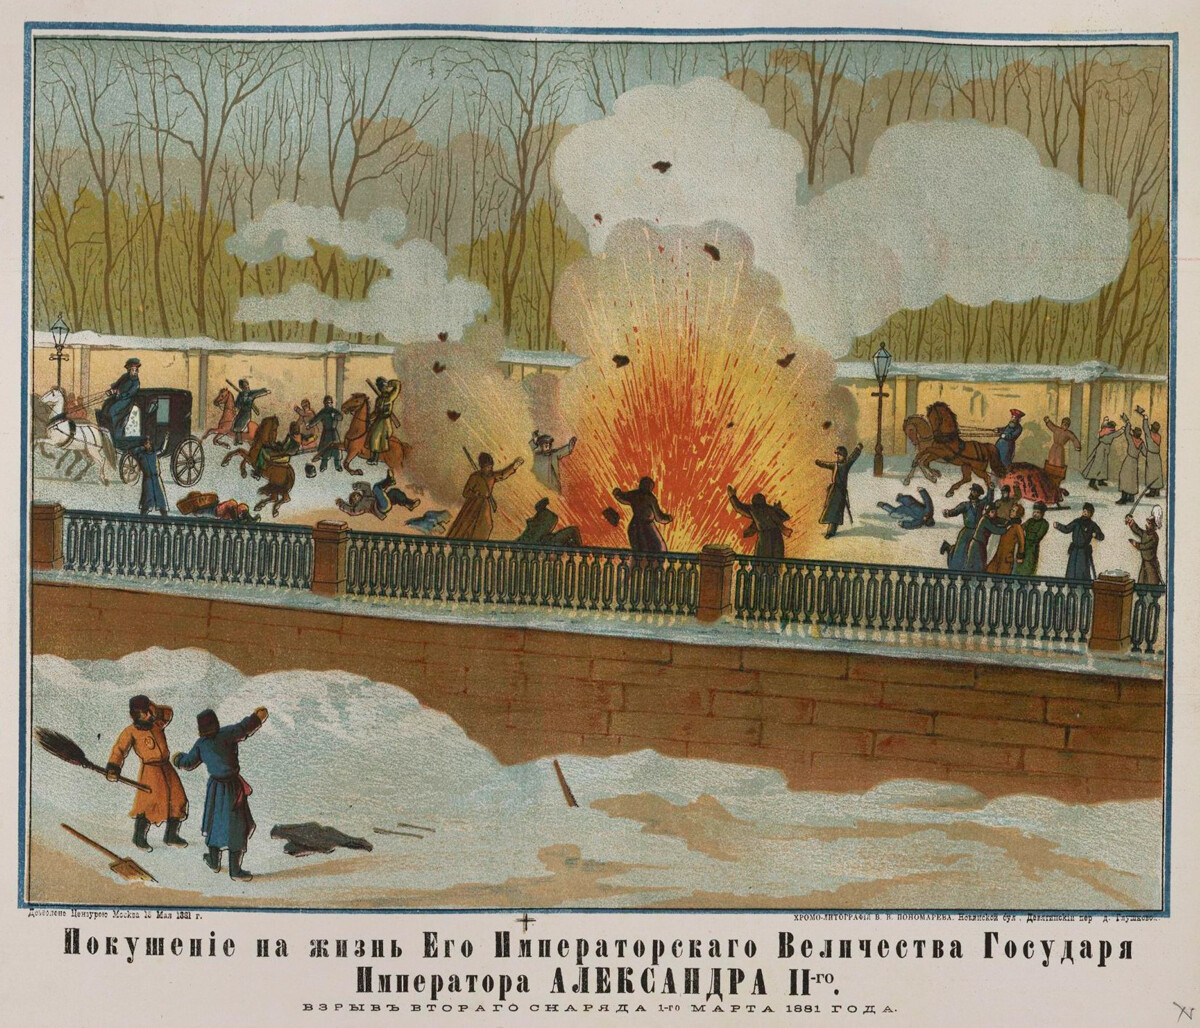 Poskus atentata na Aleksandra II. Eksplozija dveh izstrelkov 1.03.1881 